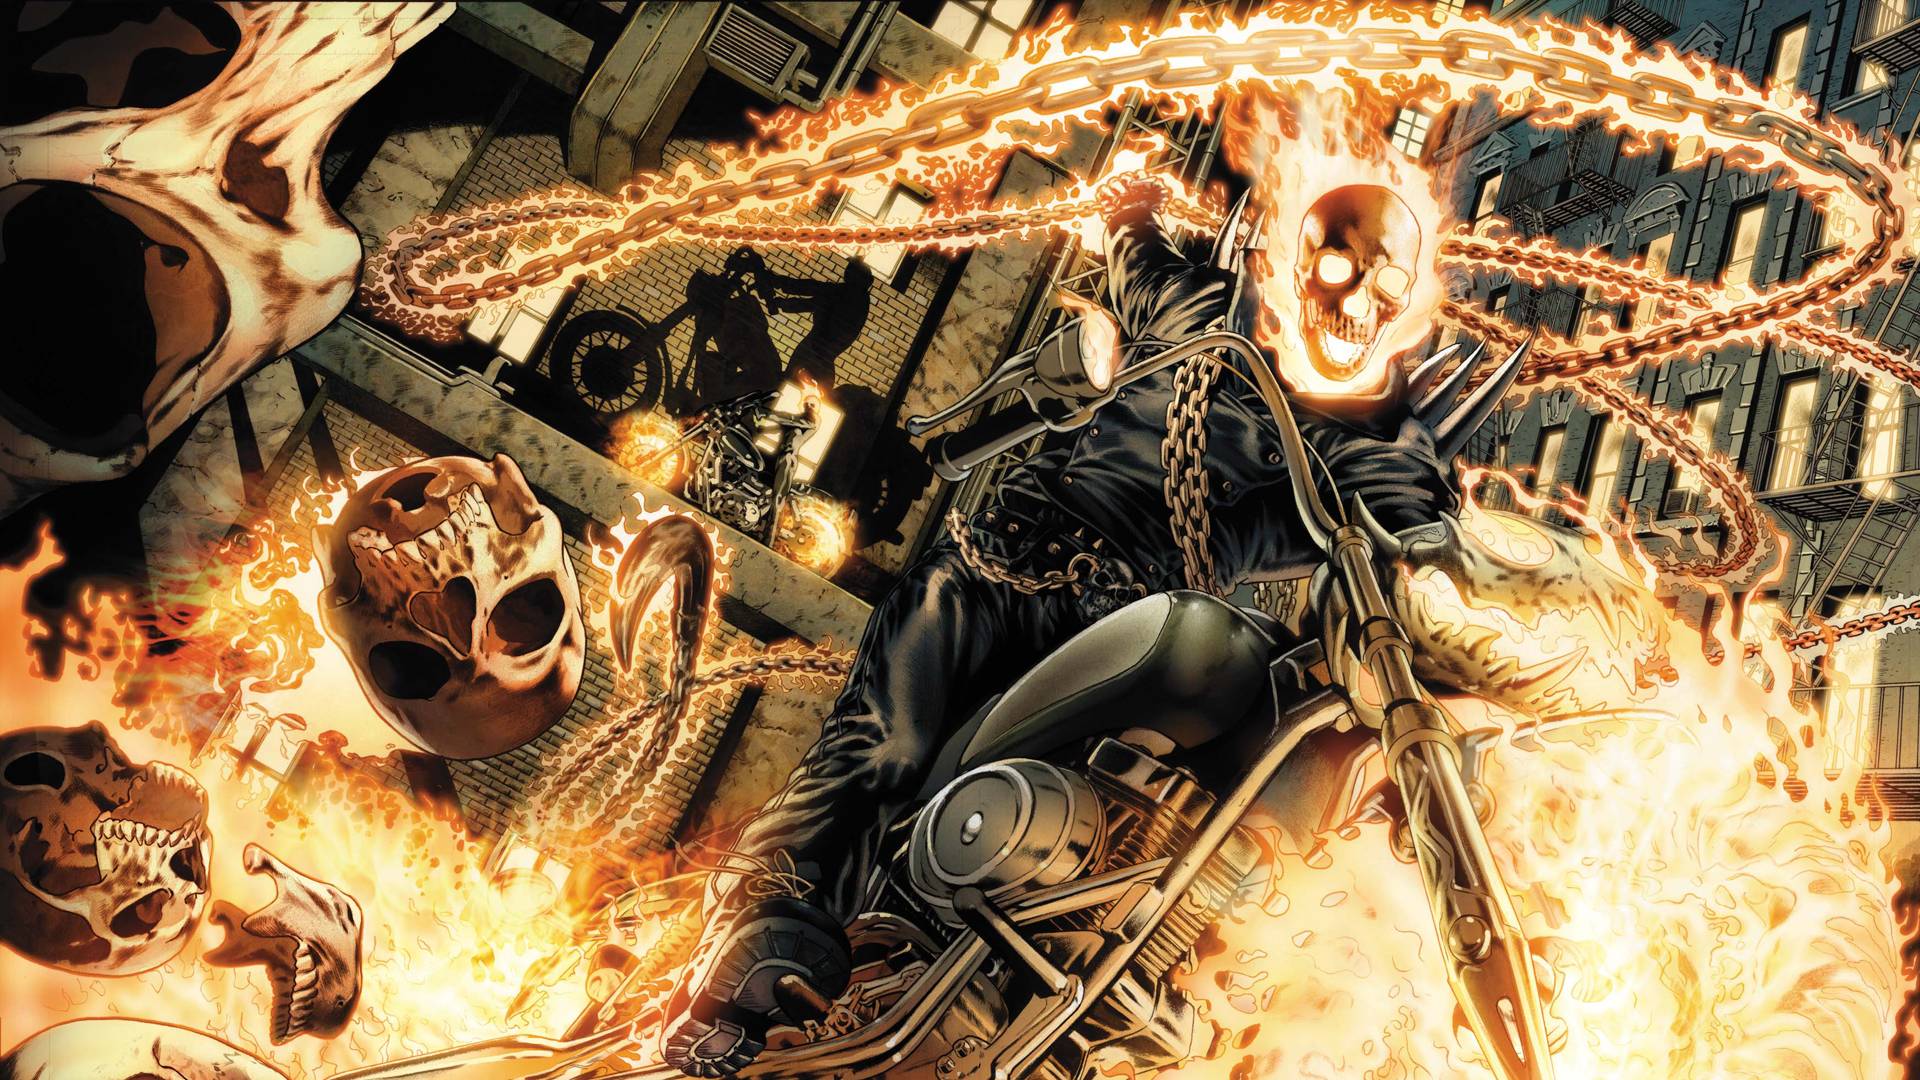 Death (Darksiders) vs Ghost Rider (Blaze)